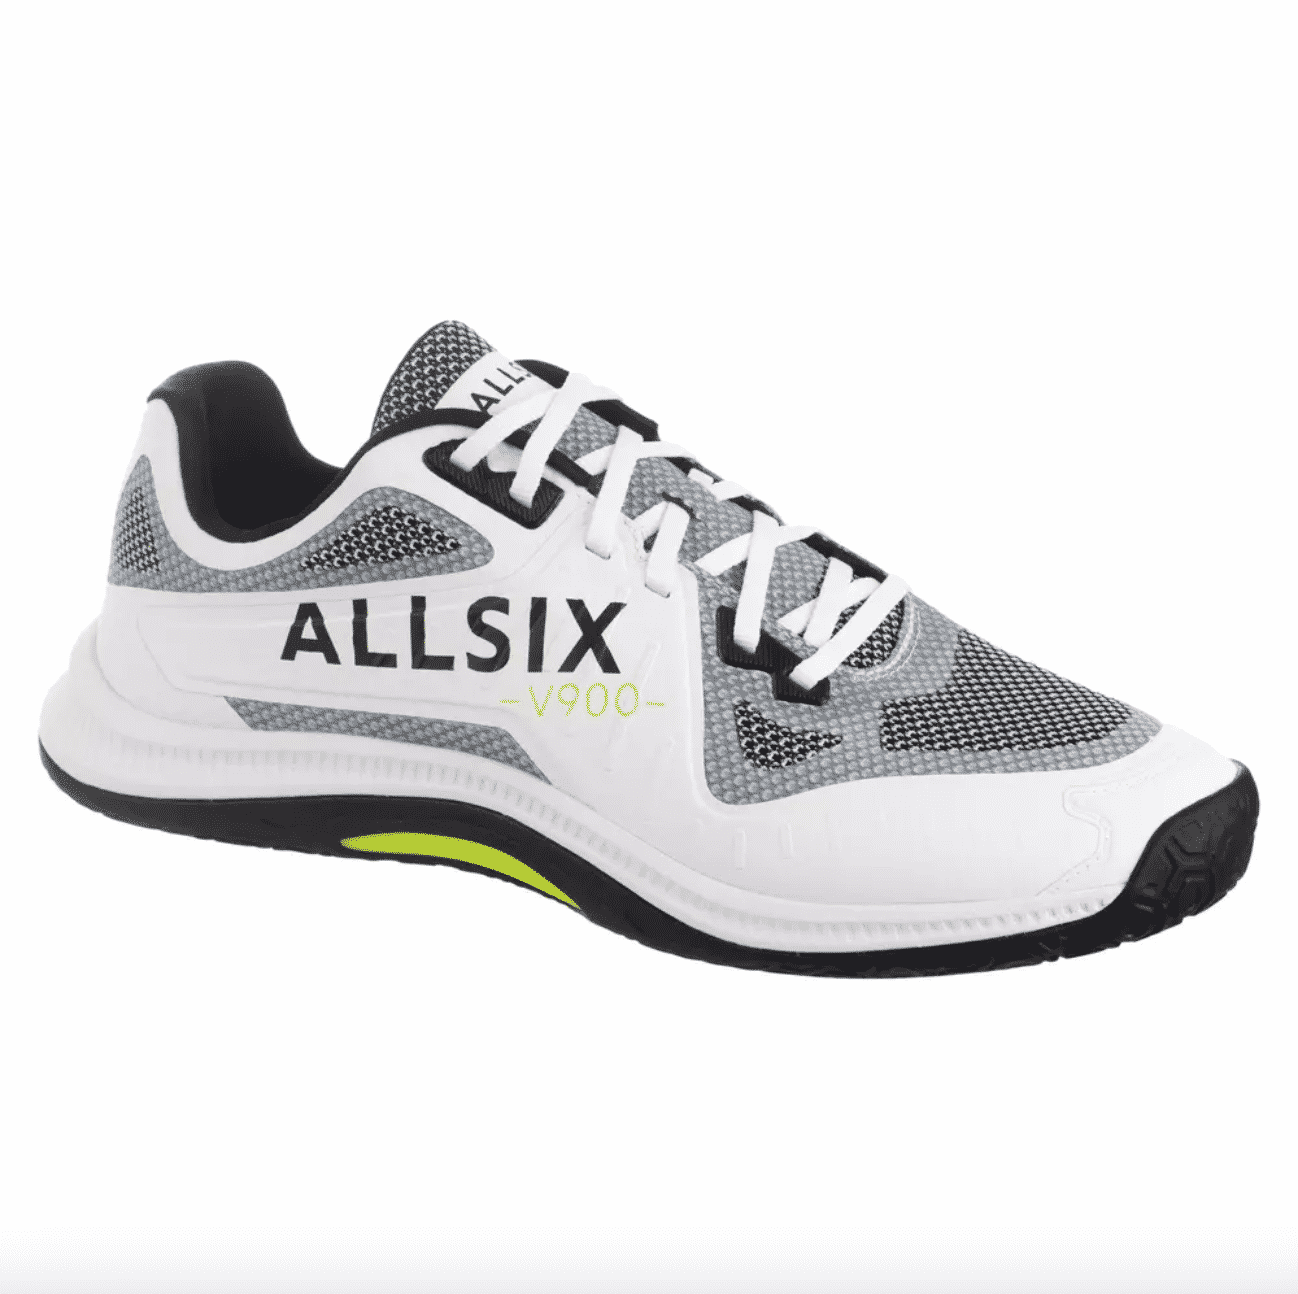 allsix-presente-ses-nouvelles-chaussures-de-volley-vs900-1